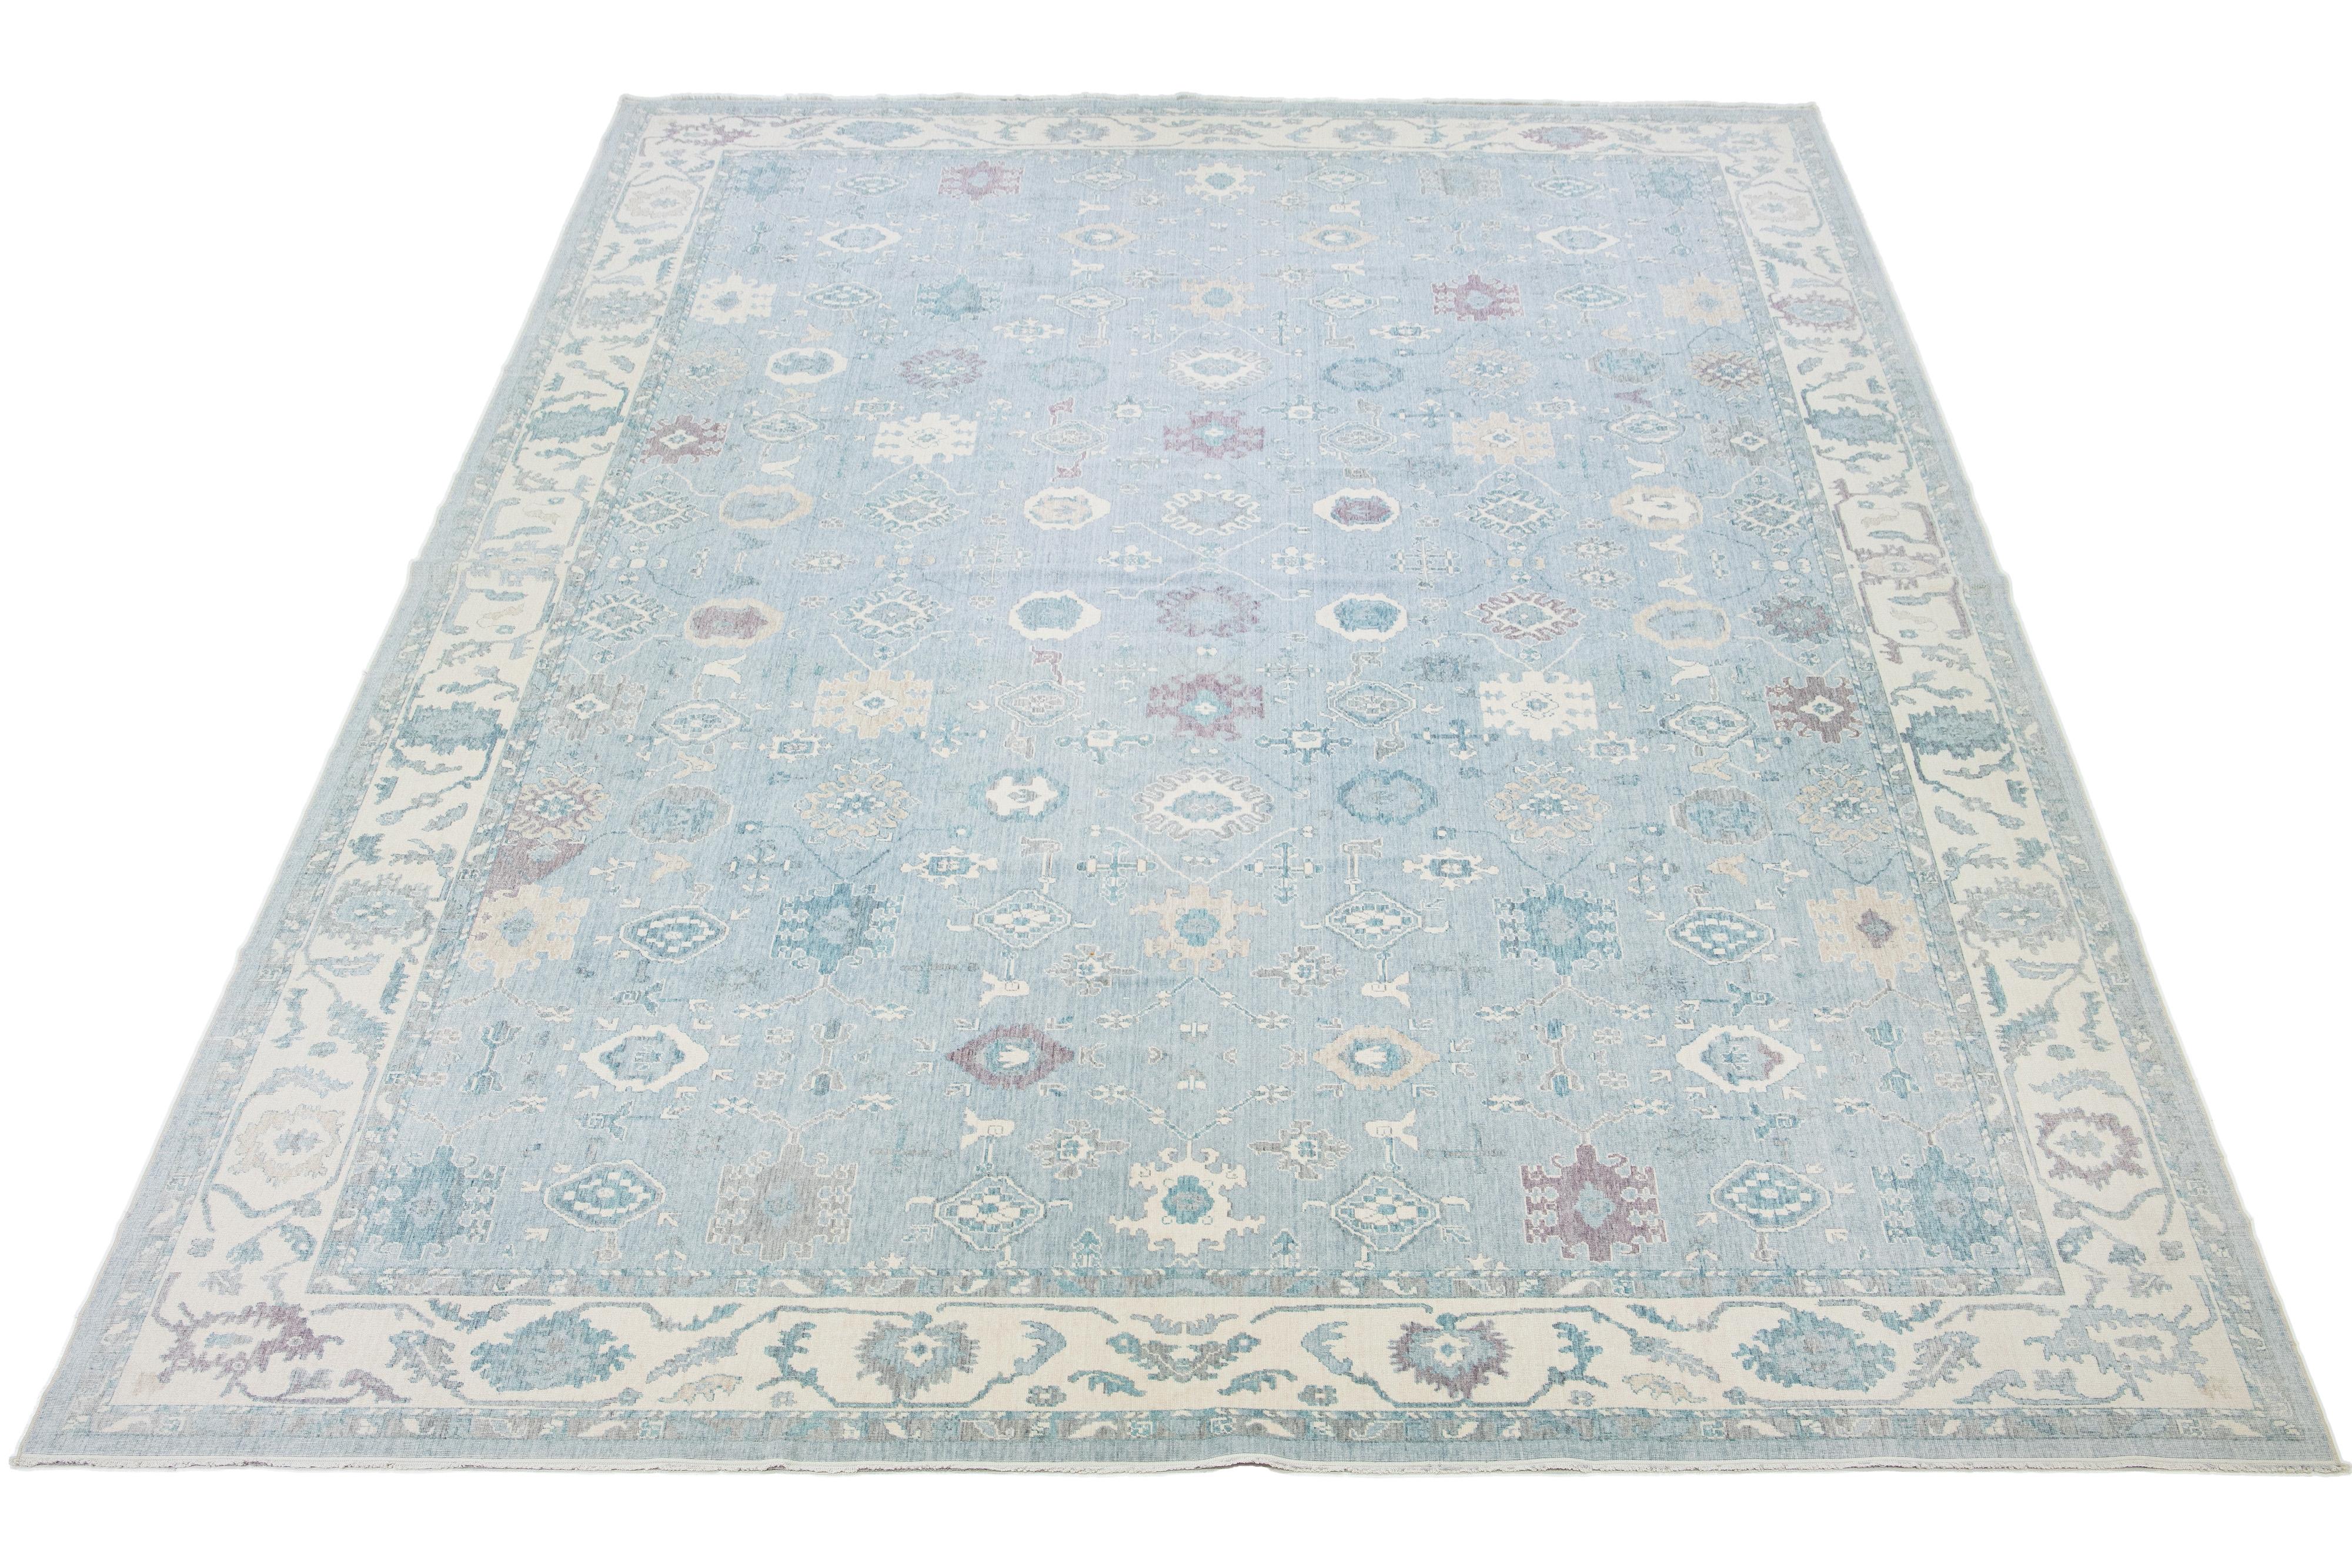 Ce magnifique tapis en laine noué à la main présente une base bleu clair avec un motif floral captivant aux accents ivoire, marron clair et violet. Il est parfait pour compléter n'importe quel décor.

Ce tapis mesure 12'8